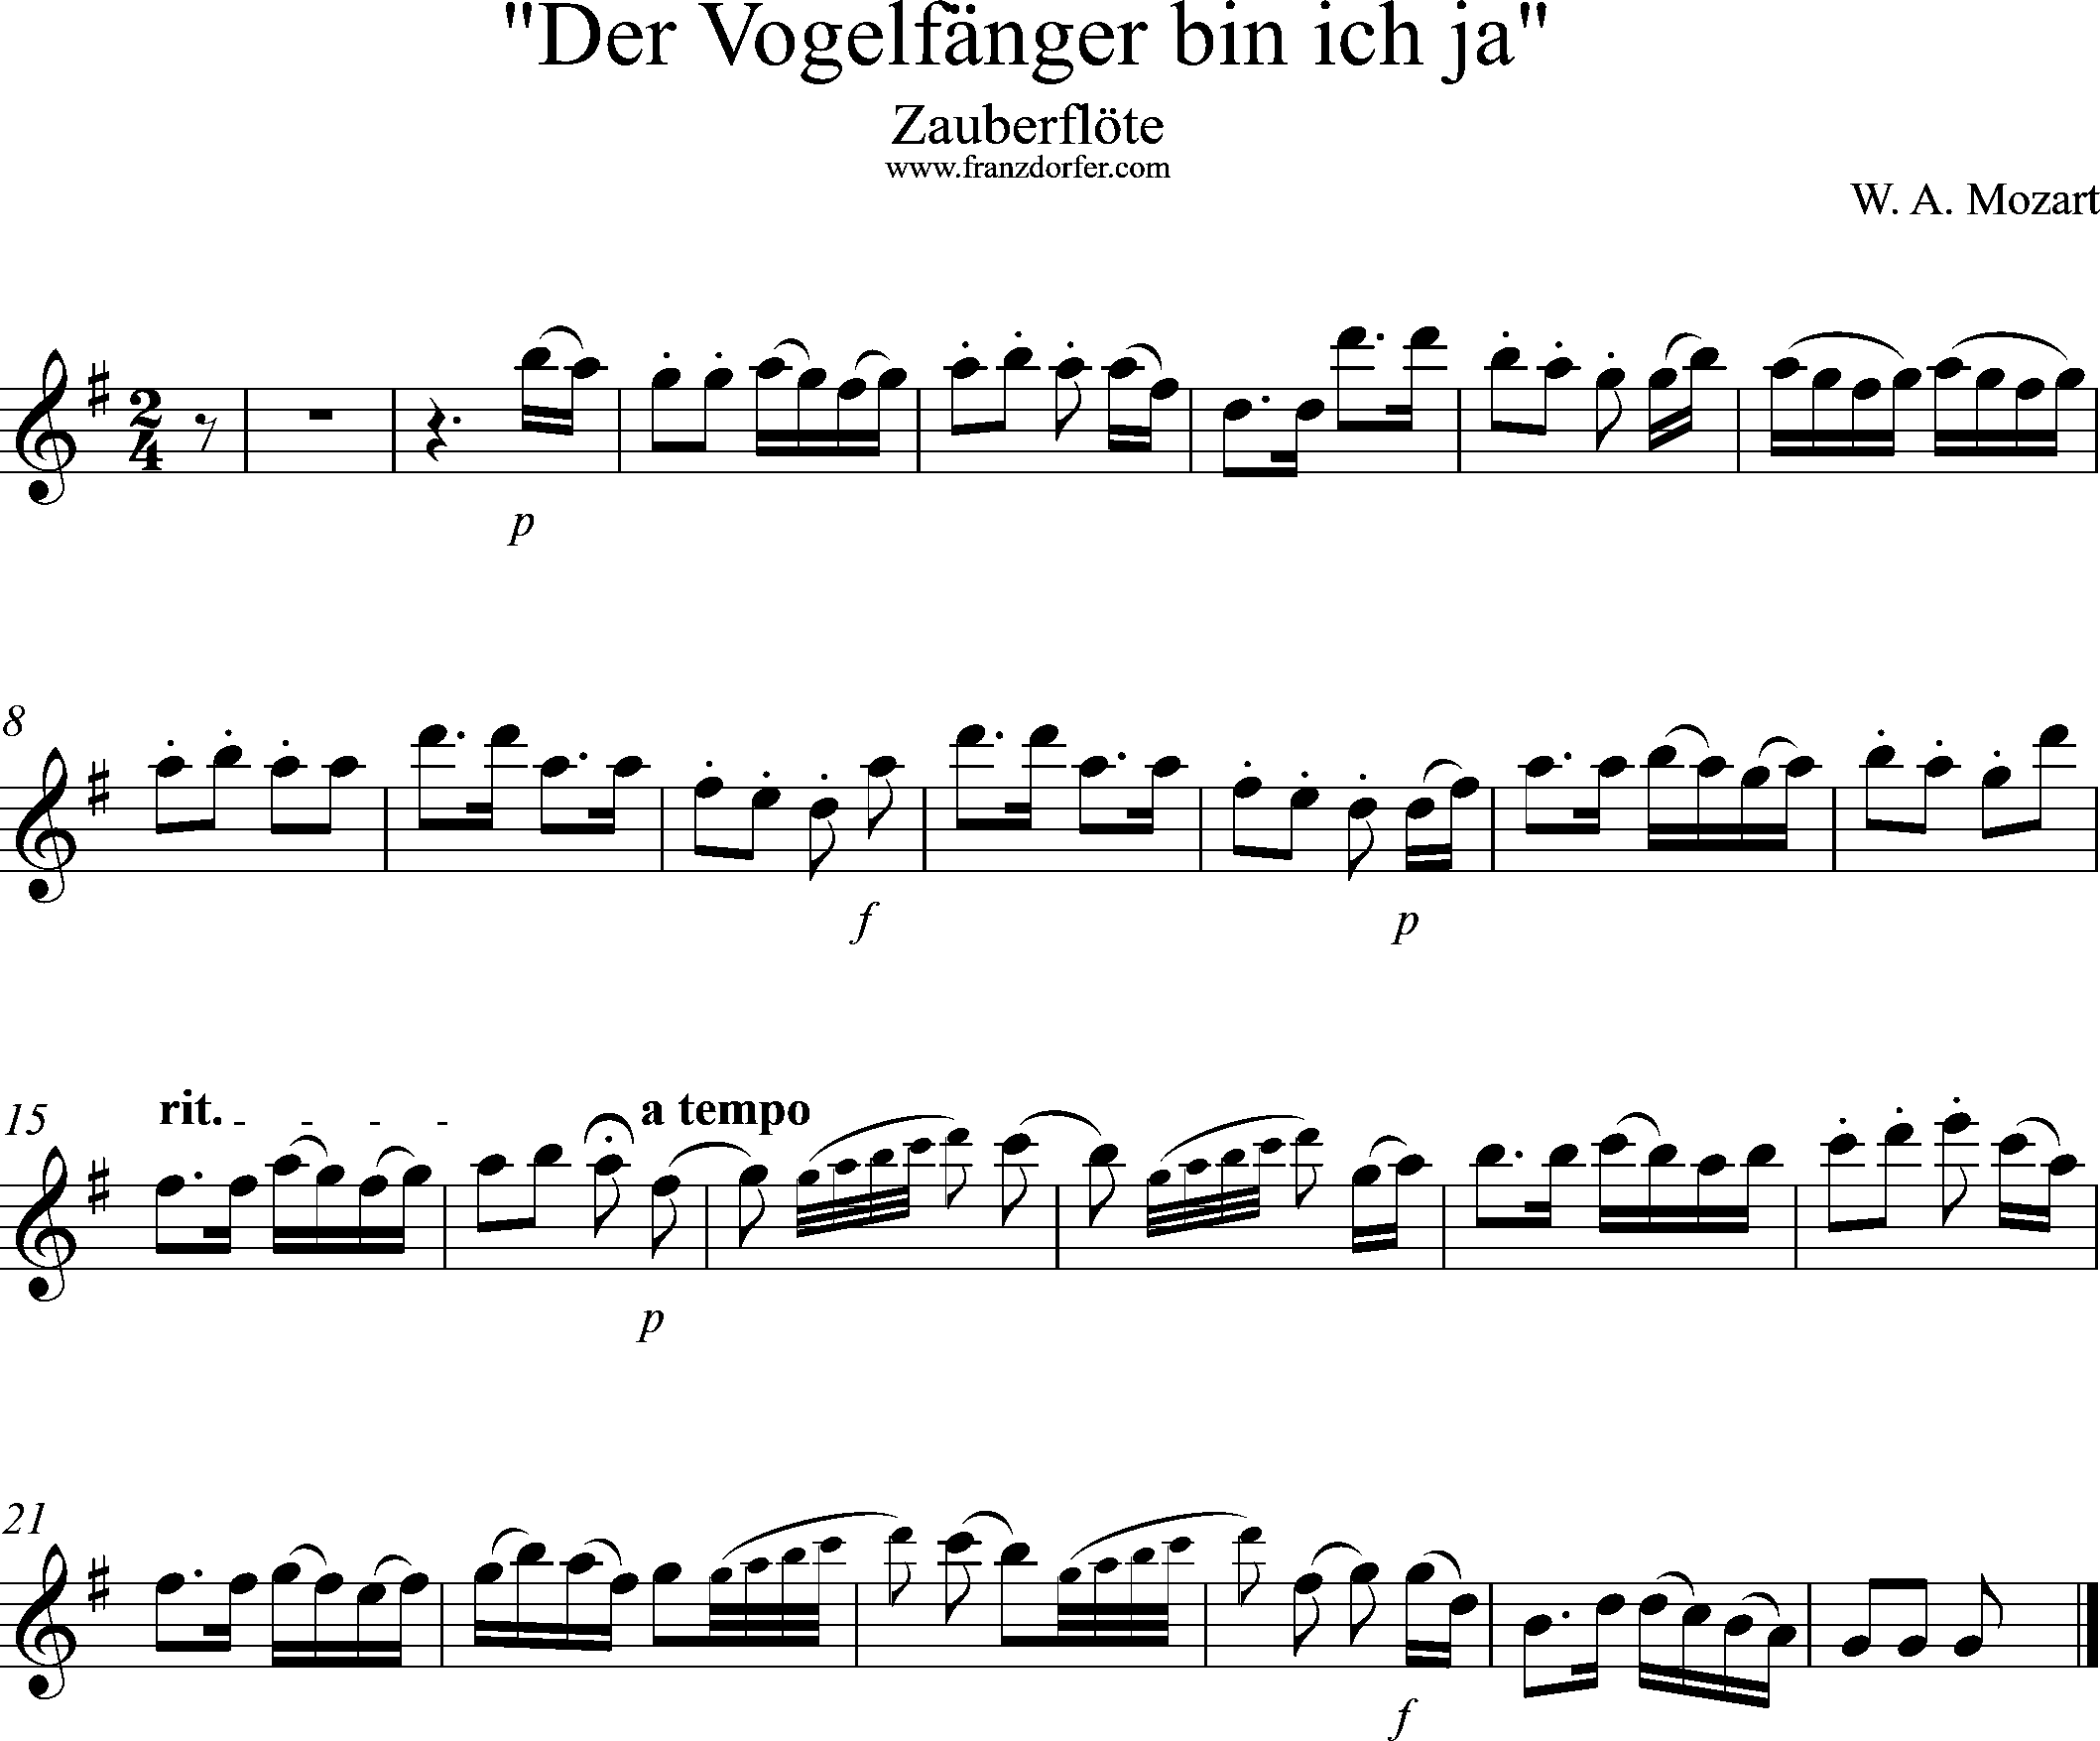 Uauberflöte, Vogelfängerlied, Solostimme, G-Dur